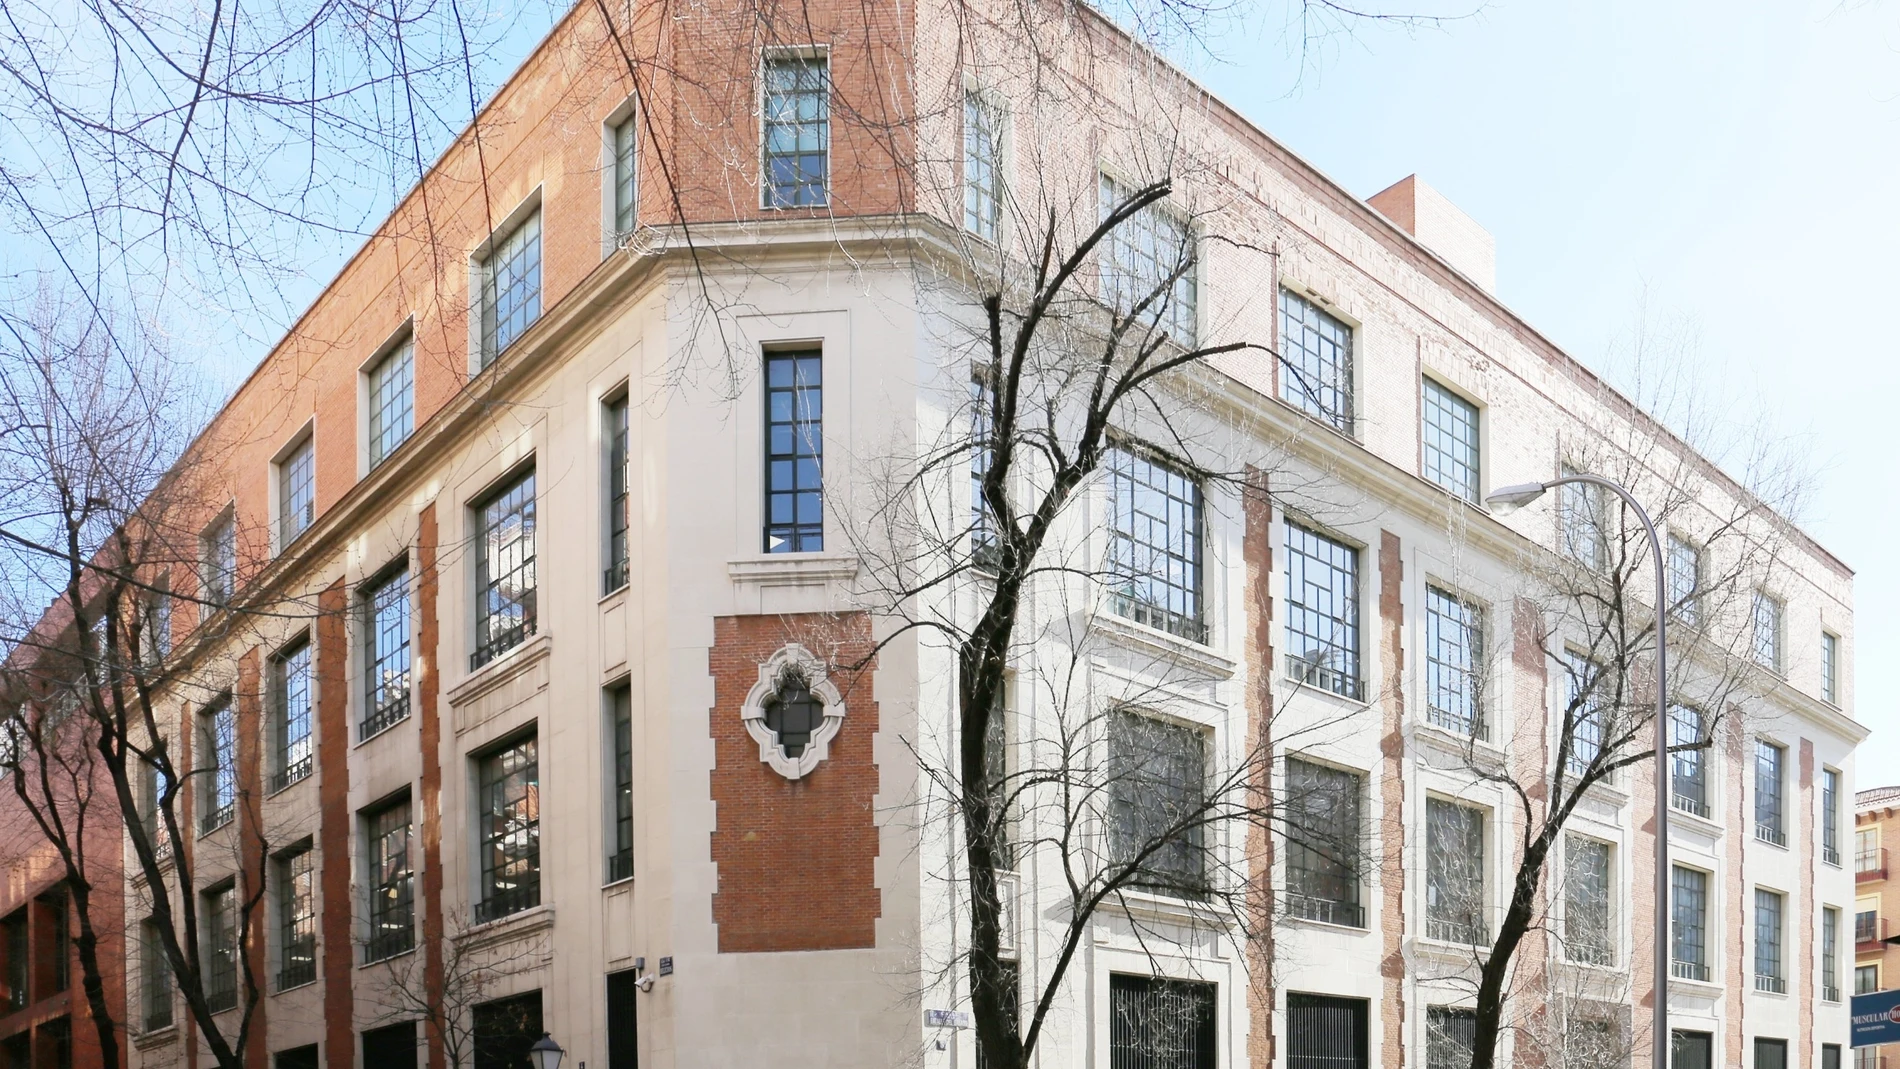 Telefónica vende un edificio de 4 plantas cerca de Atocha a la firma CT que lo convertirá en apartamentos de alquiler